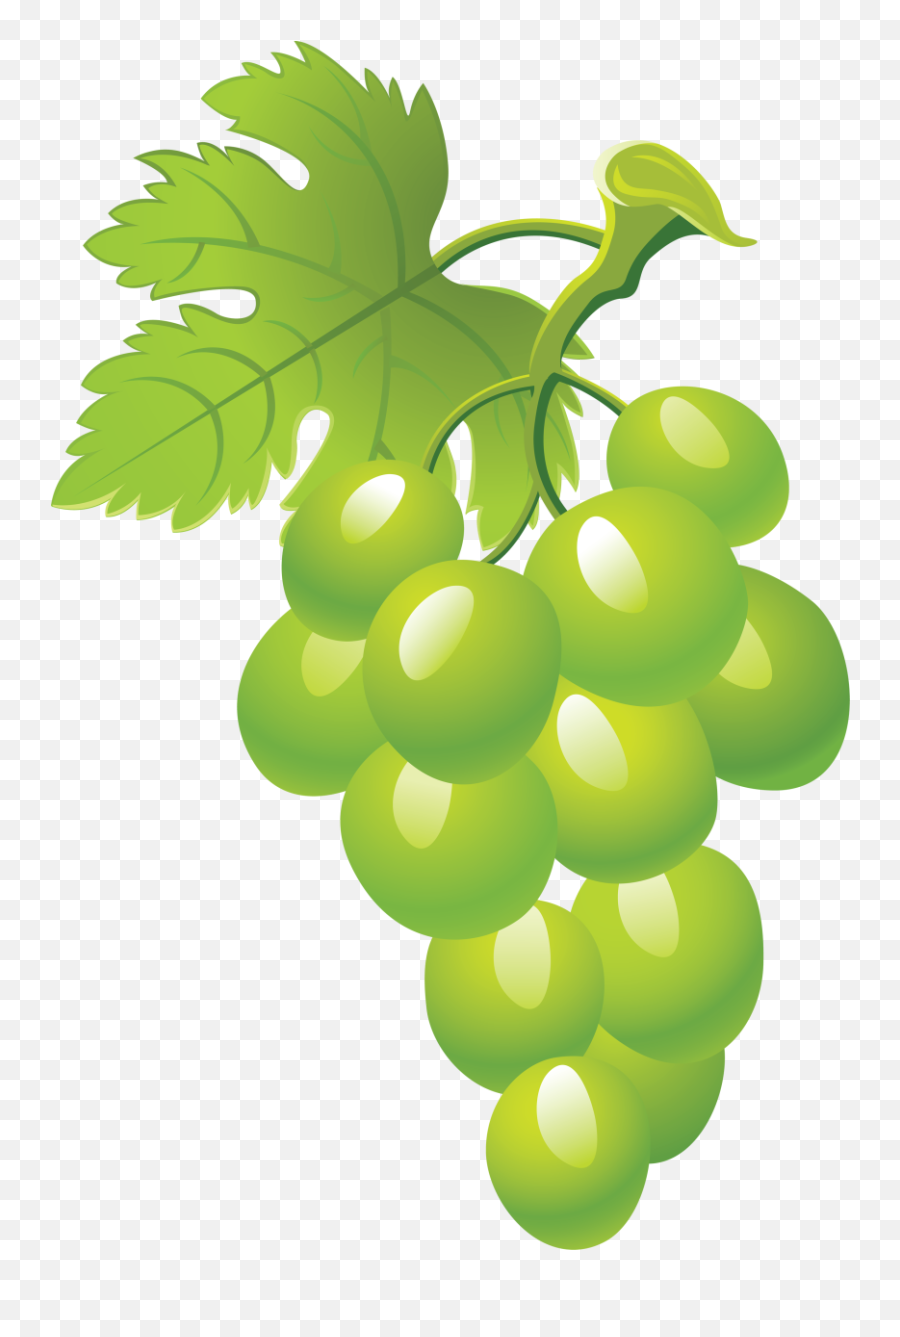 Grapes Clipart 5 - Green Grapes Clipart Emoji,Grapes Emoji